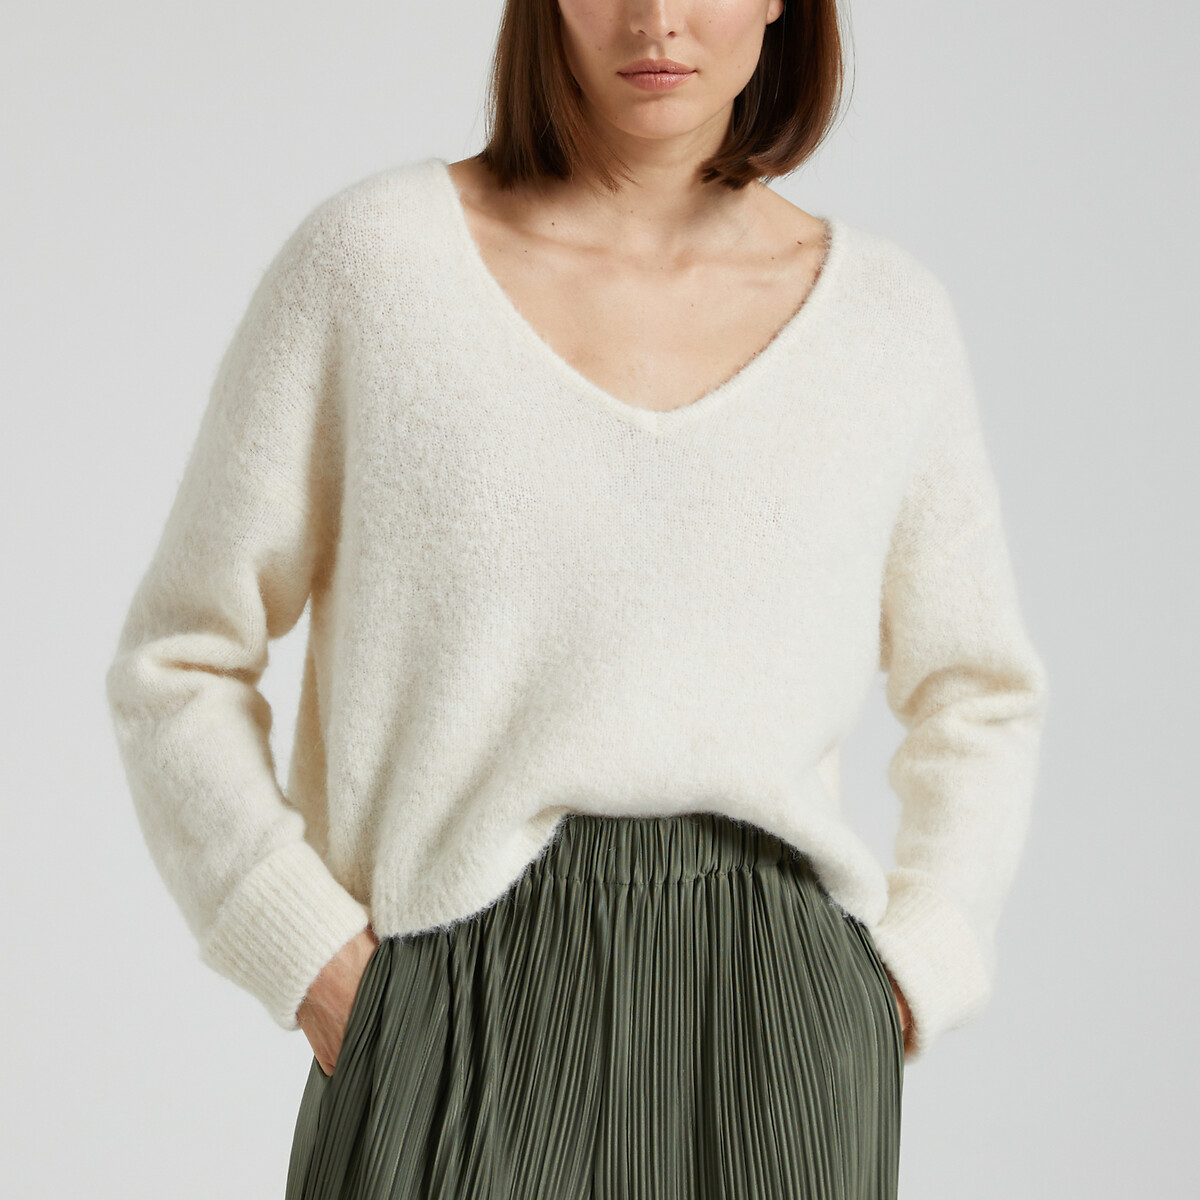 Пуловер из тонкого трикотажа с V-образным вырезом EAST M серый пуловер с v образным вырезом из тонкого трикотажа s бежевый